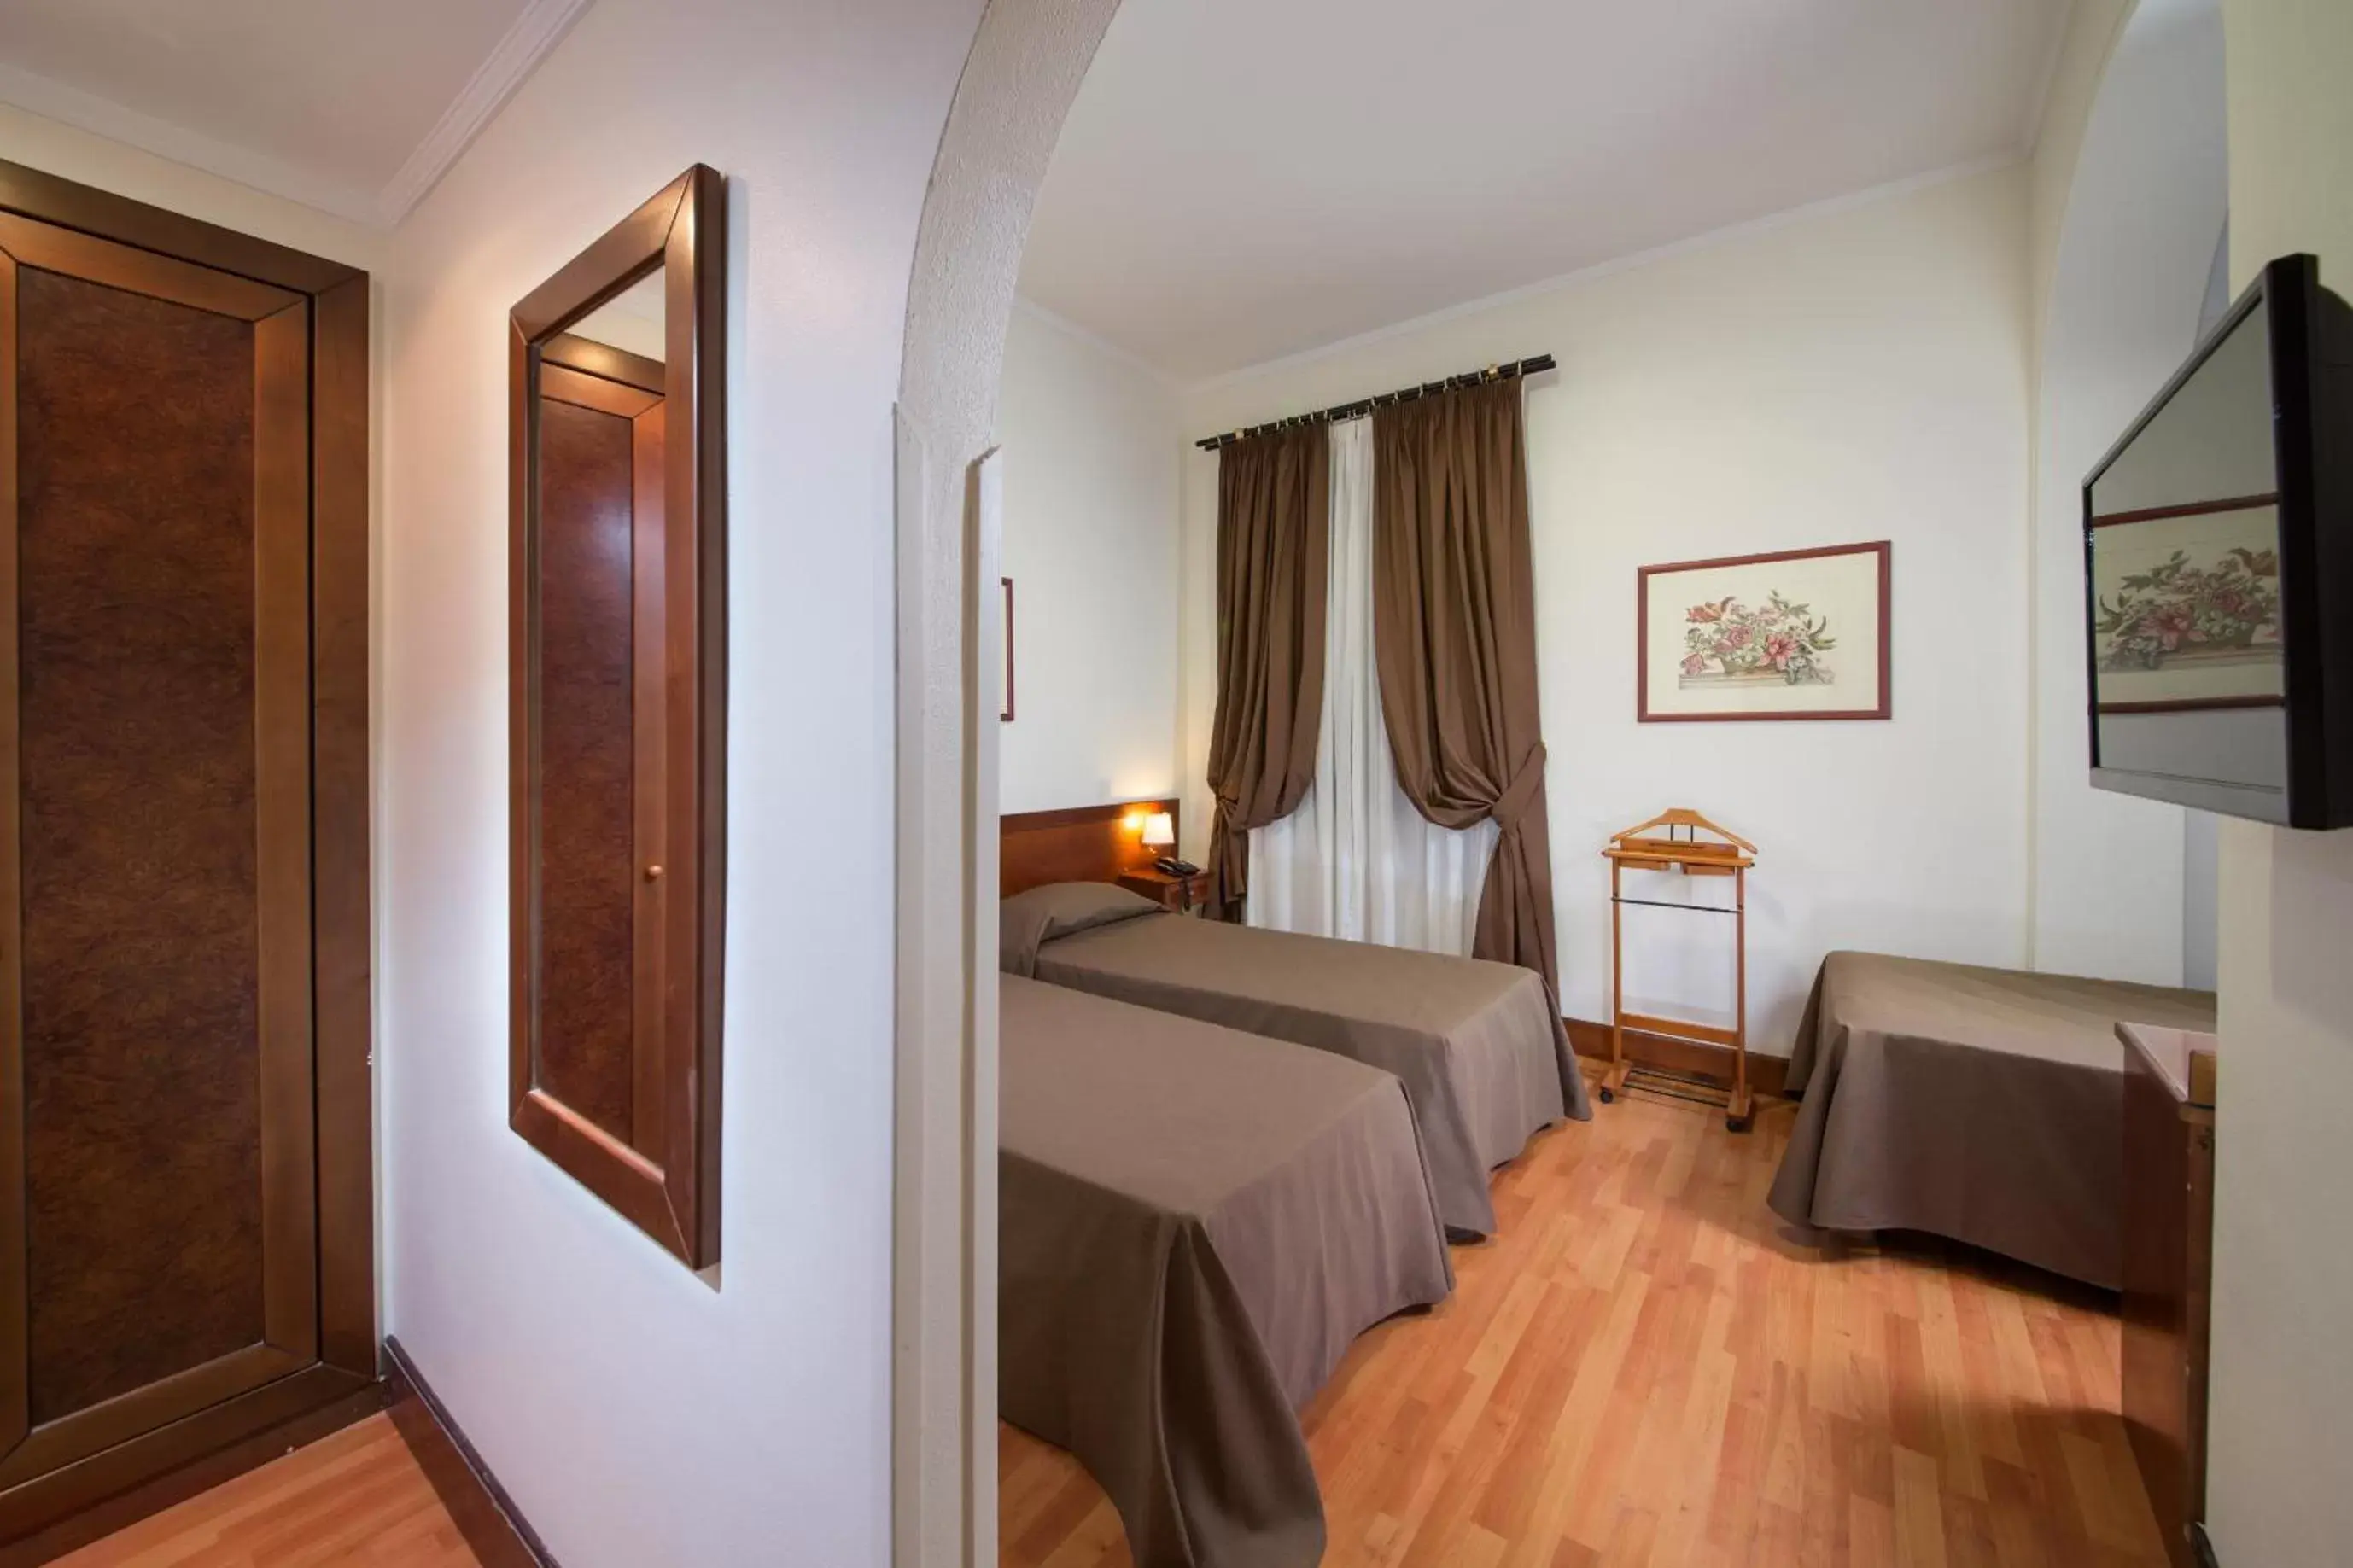 Bed in Hotel Villa Grazioli